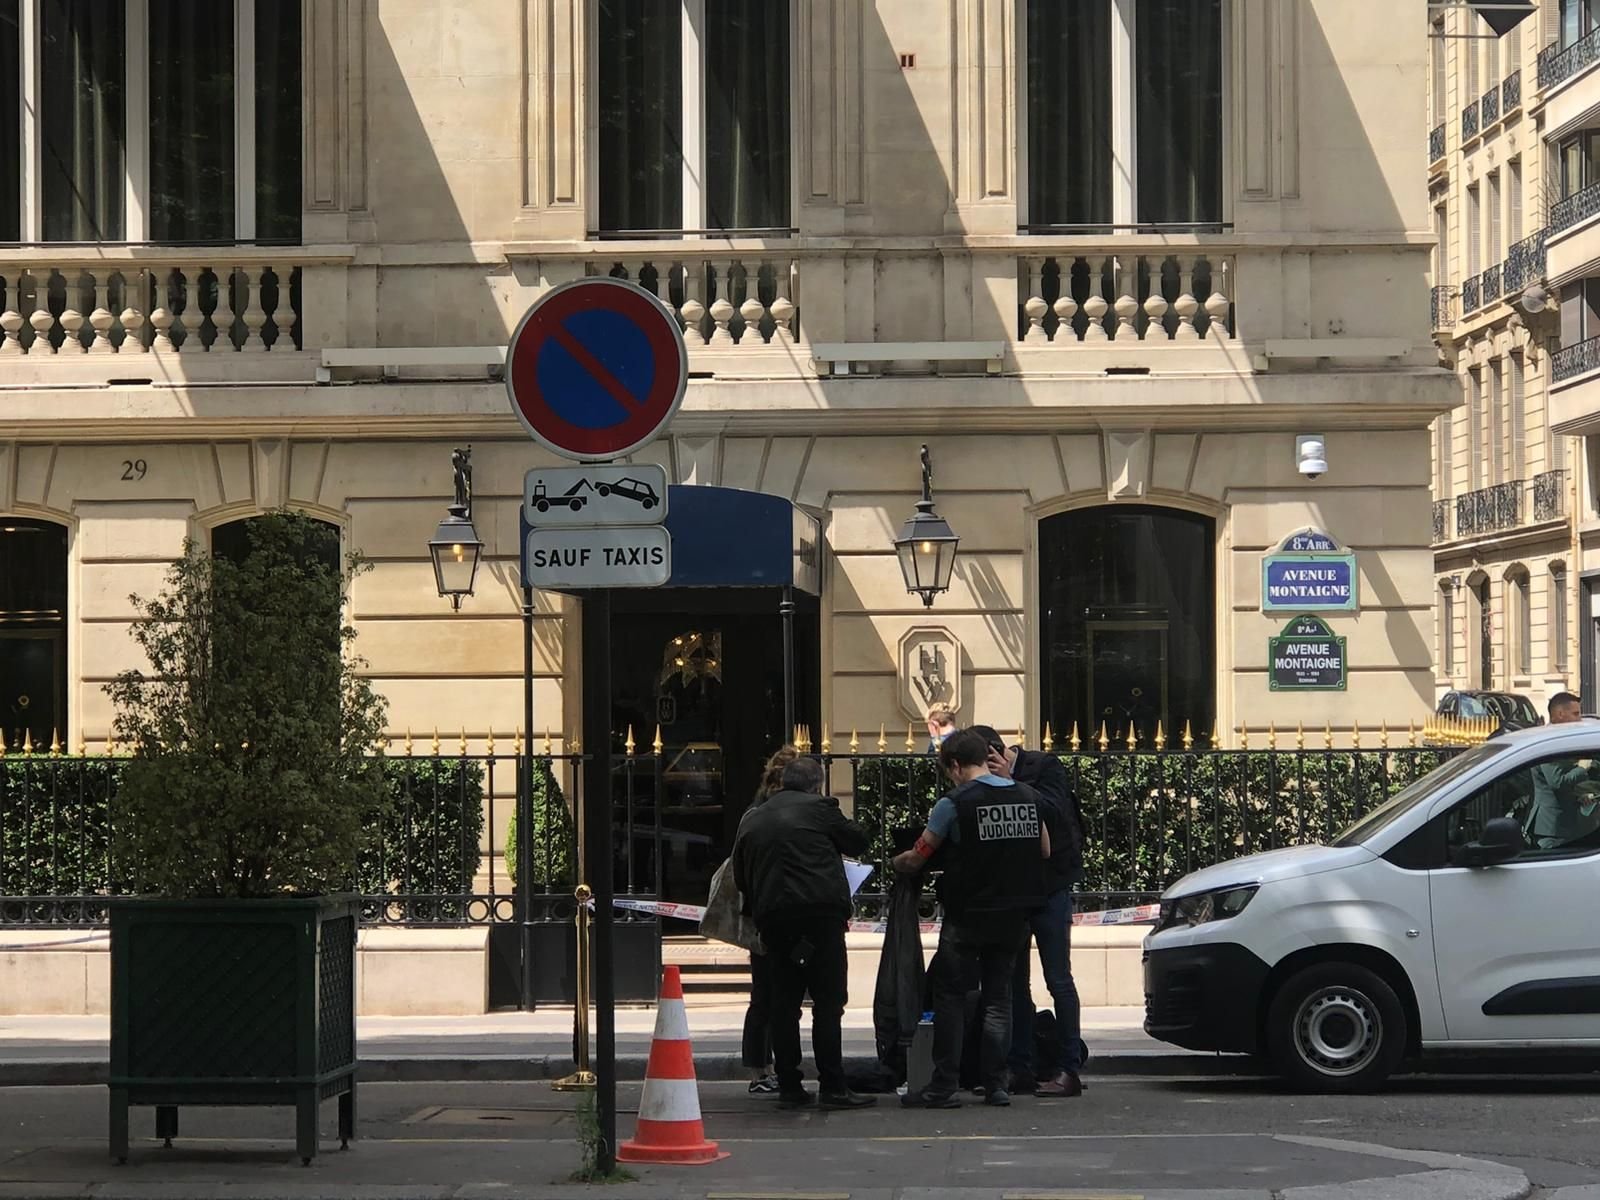 Avenue Montaigne, Paris (VIIIe), samedi 18 mai. Les enquêteurs de la Brigade de répression du banditisme effectuent les constatations après le braquage de la boutique du joaillier. LP/N.G.